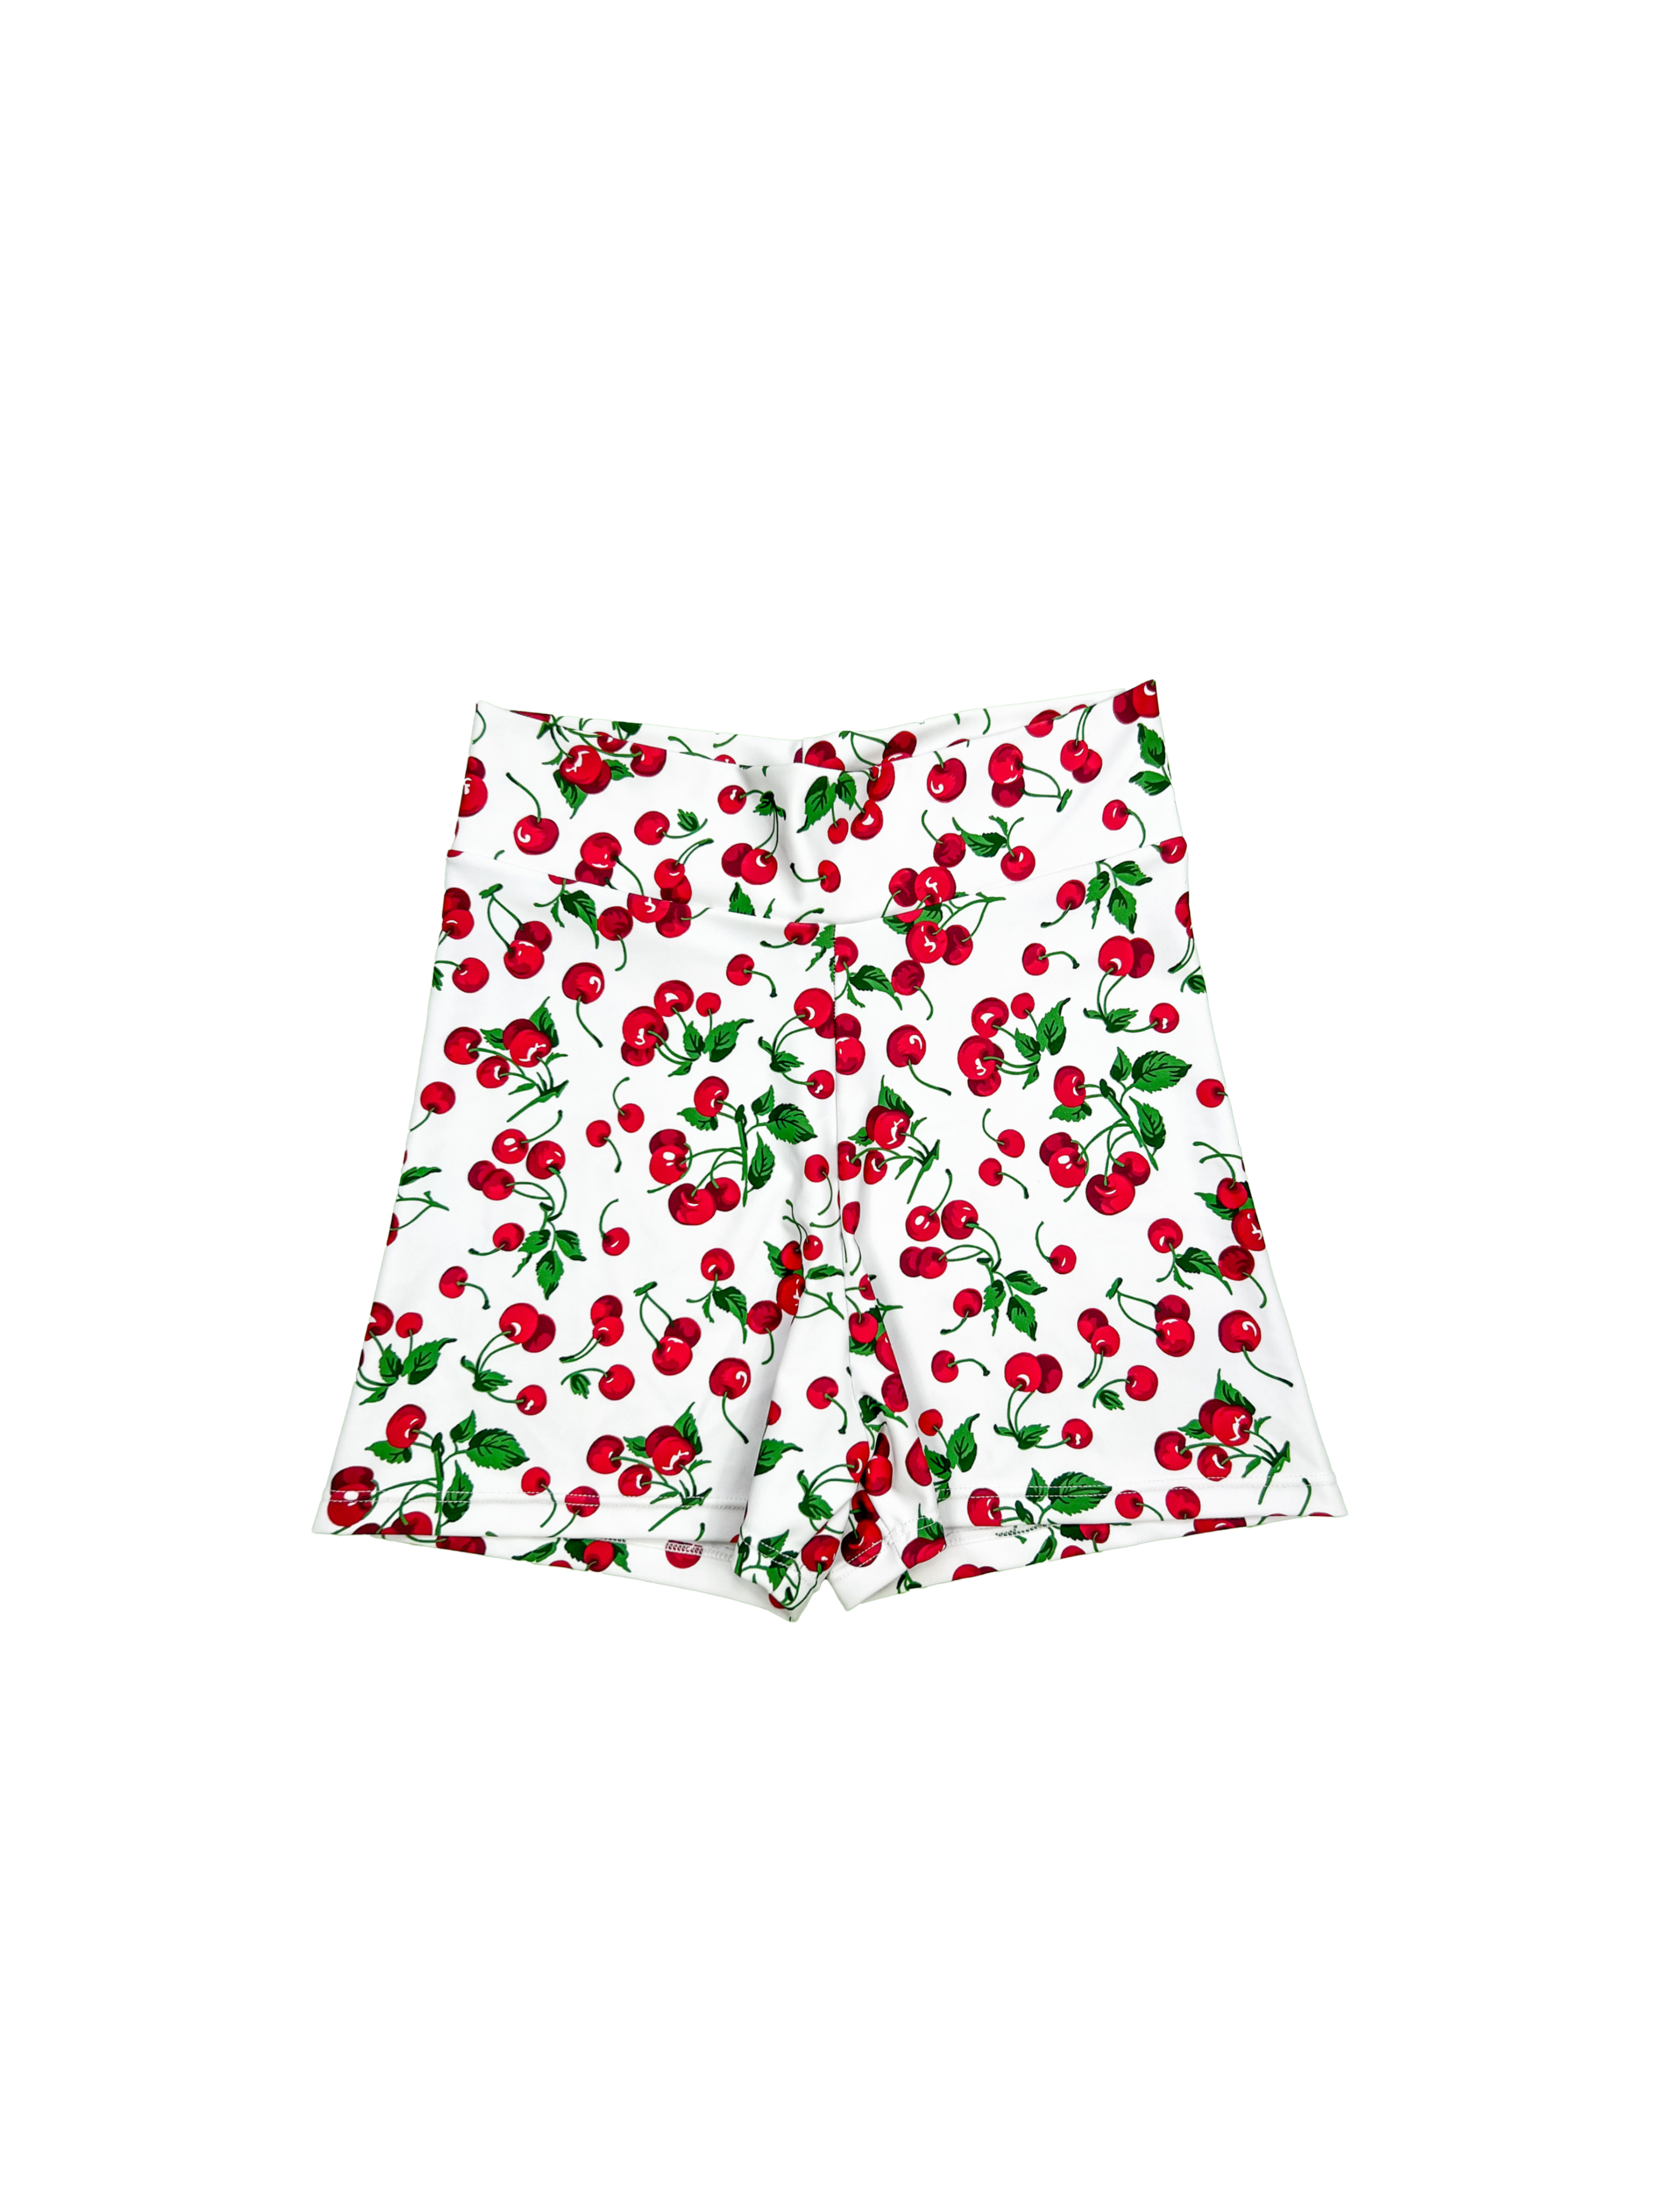 Poppy Shorts - PRE ORDER